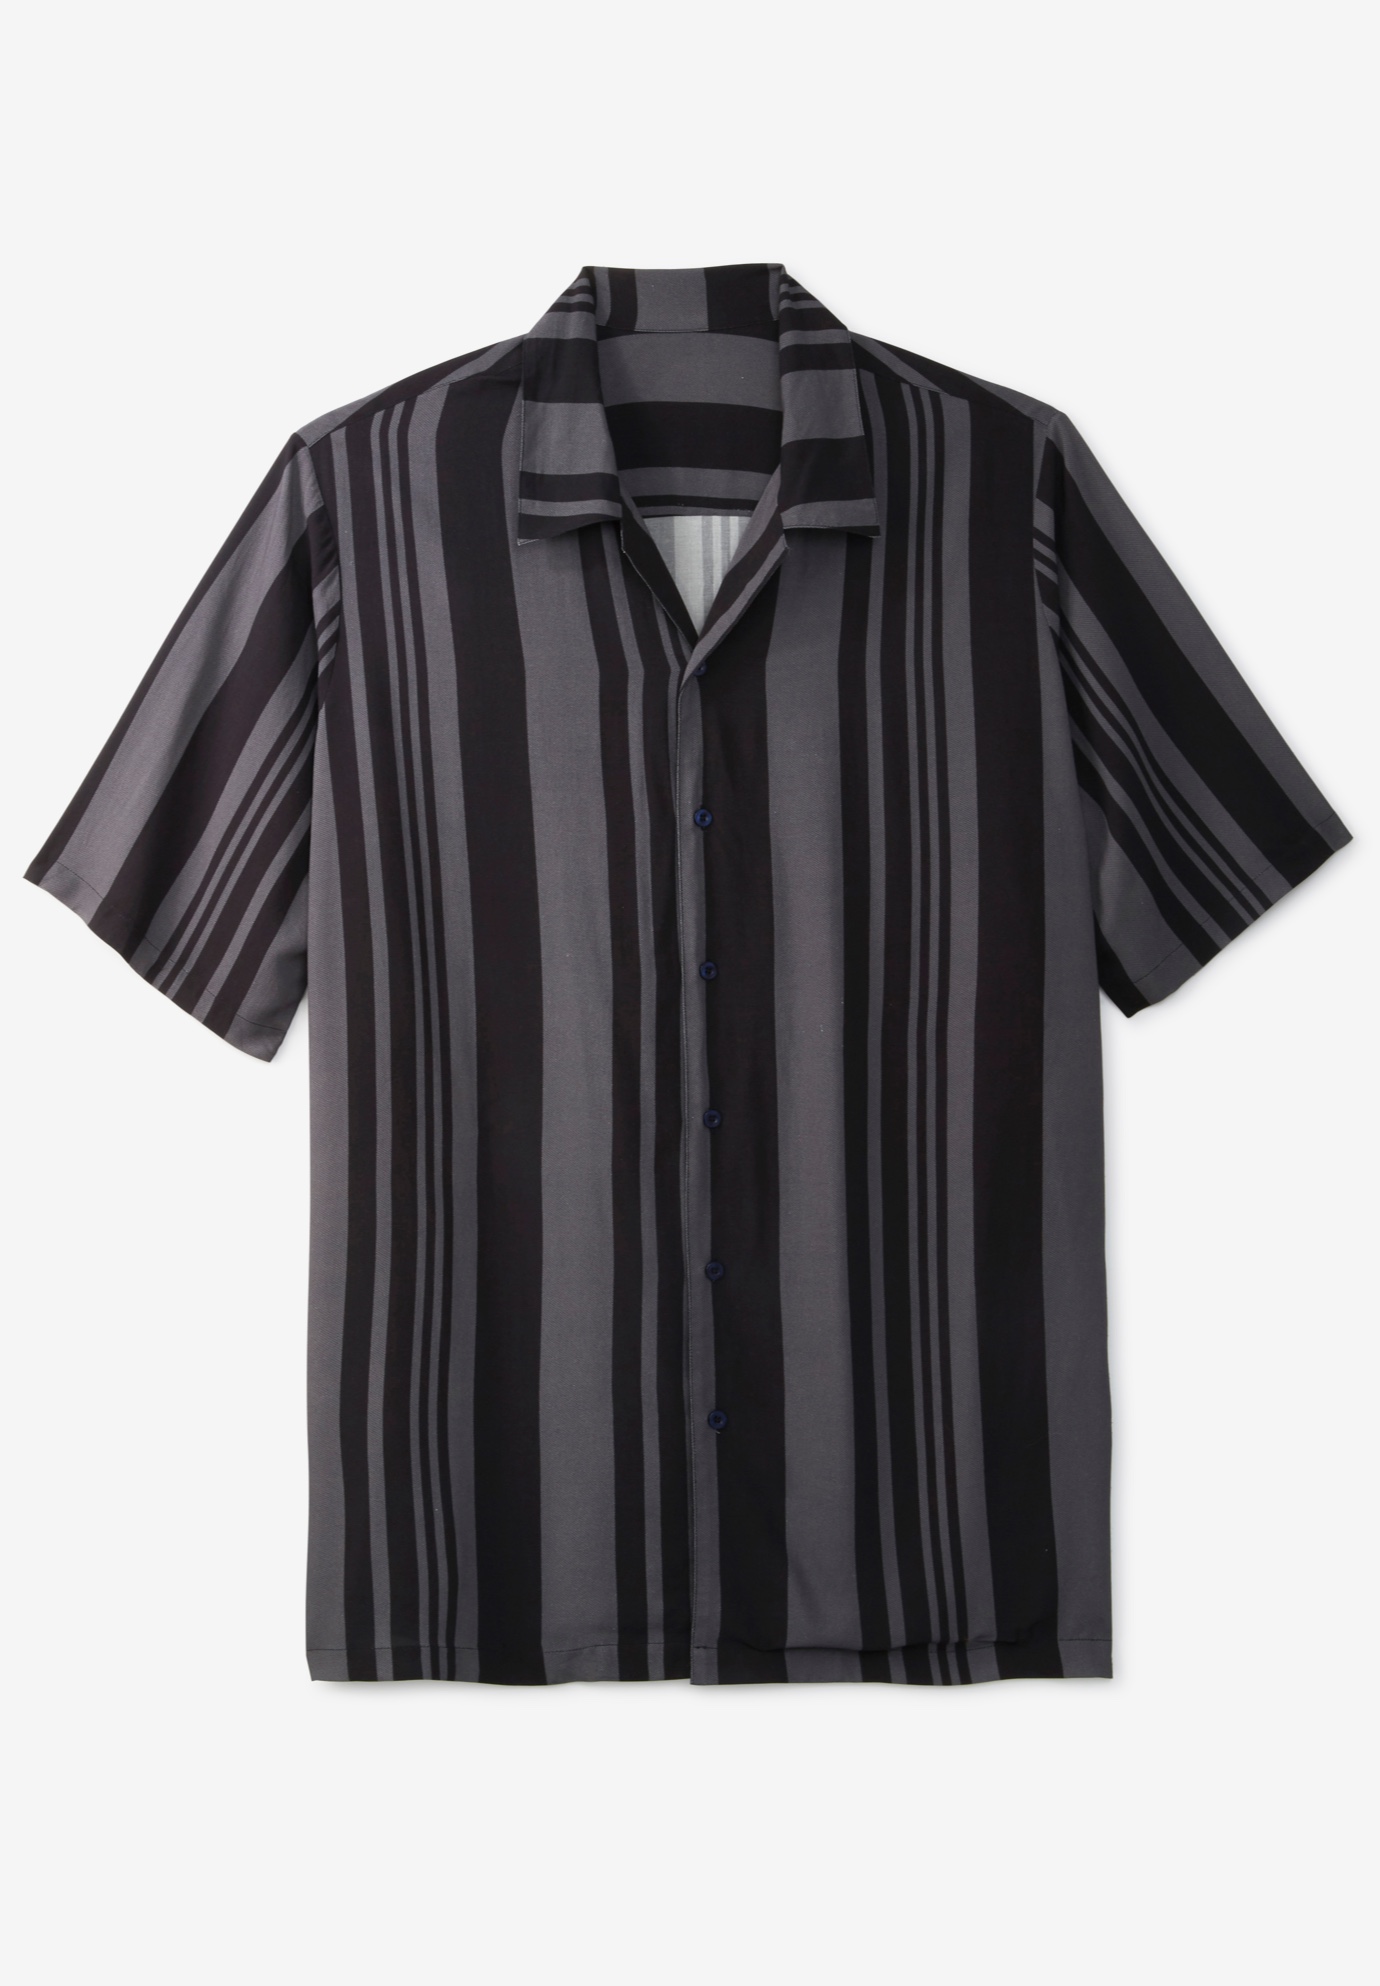 Short-Sleeve Colorblock Rayon Shirt| Big and Tall Casual Shirts | King Size